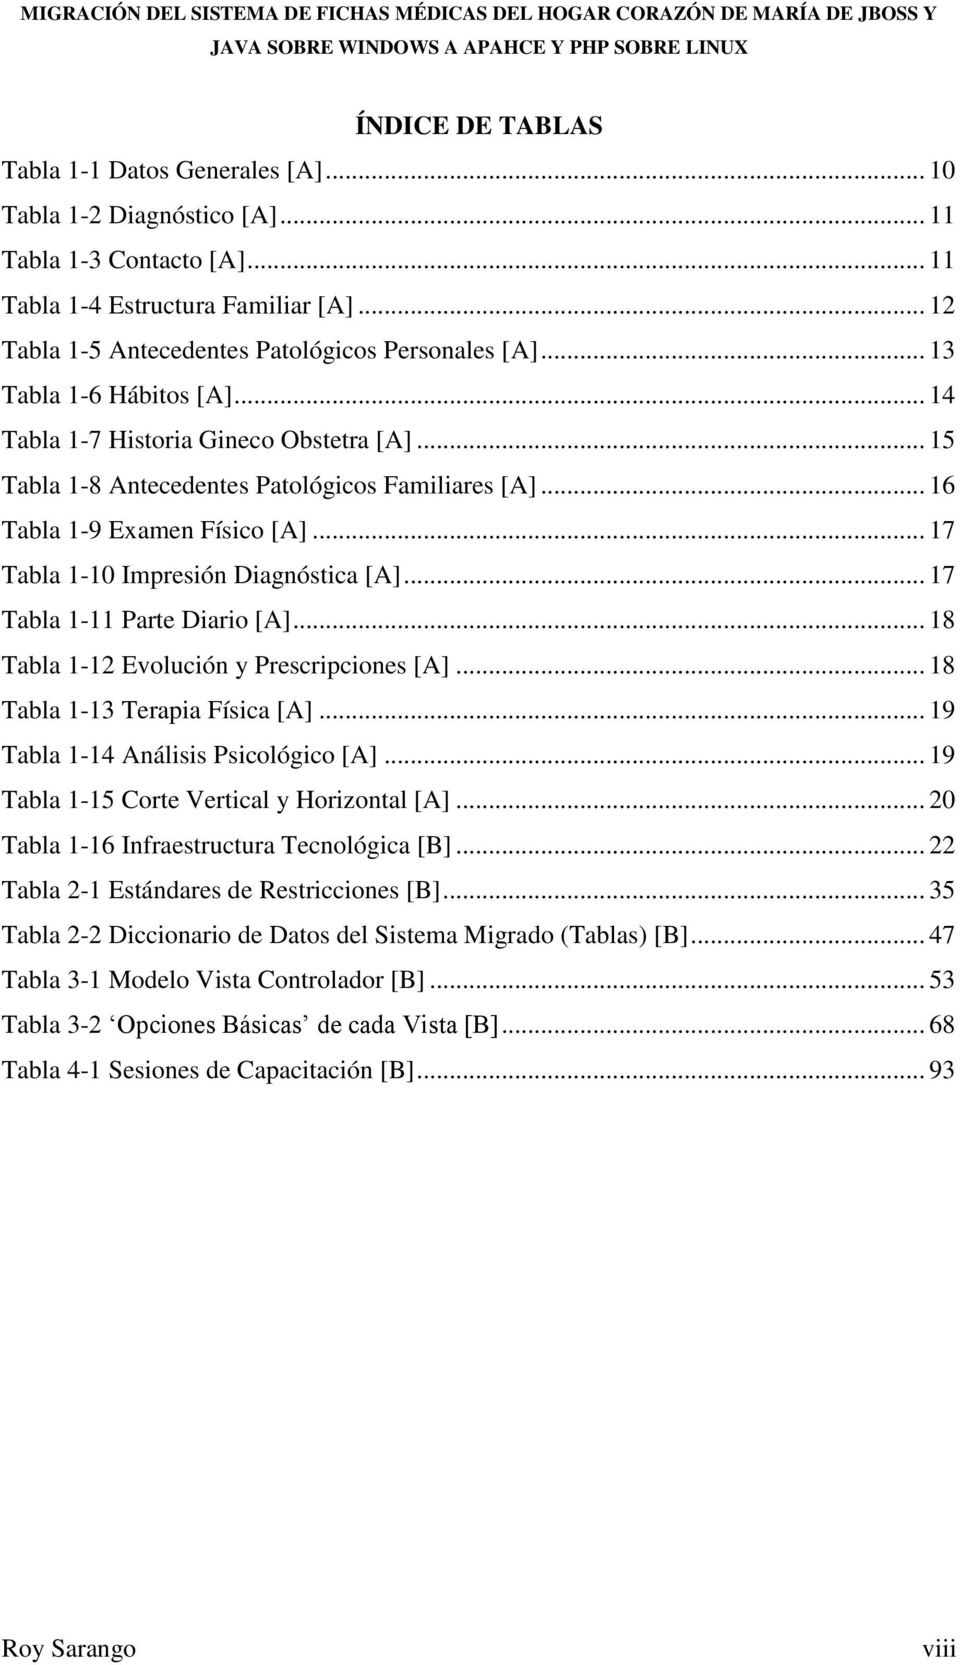 .. 16 Tabla 1-9 Examen Físico [A]... 17 Tabla 1-10 Impresión Diagnóstica [A]... 17 Tabla 1-11 Parte Diario [A]... 18 Tabla 1-12 Evolución y Prescripciones [A]... 18 Tabla 1-13 Terapia Física [A].